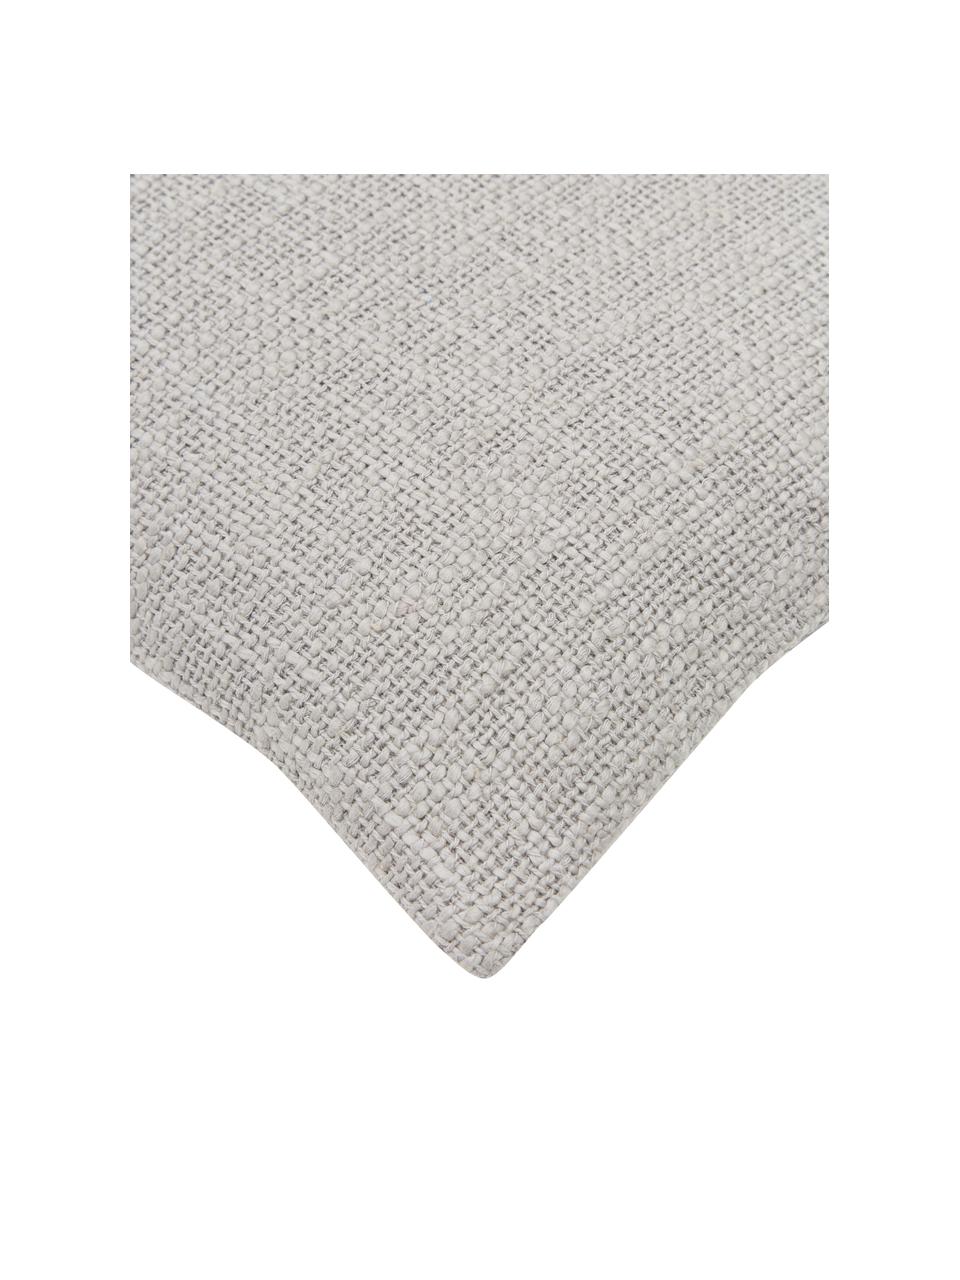 Kussenhoes Anise in grijs, 100% katoen, Grijs, B 30 x L 50 cm